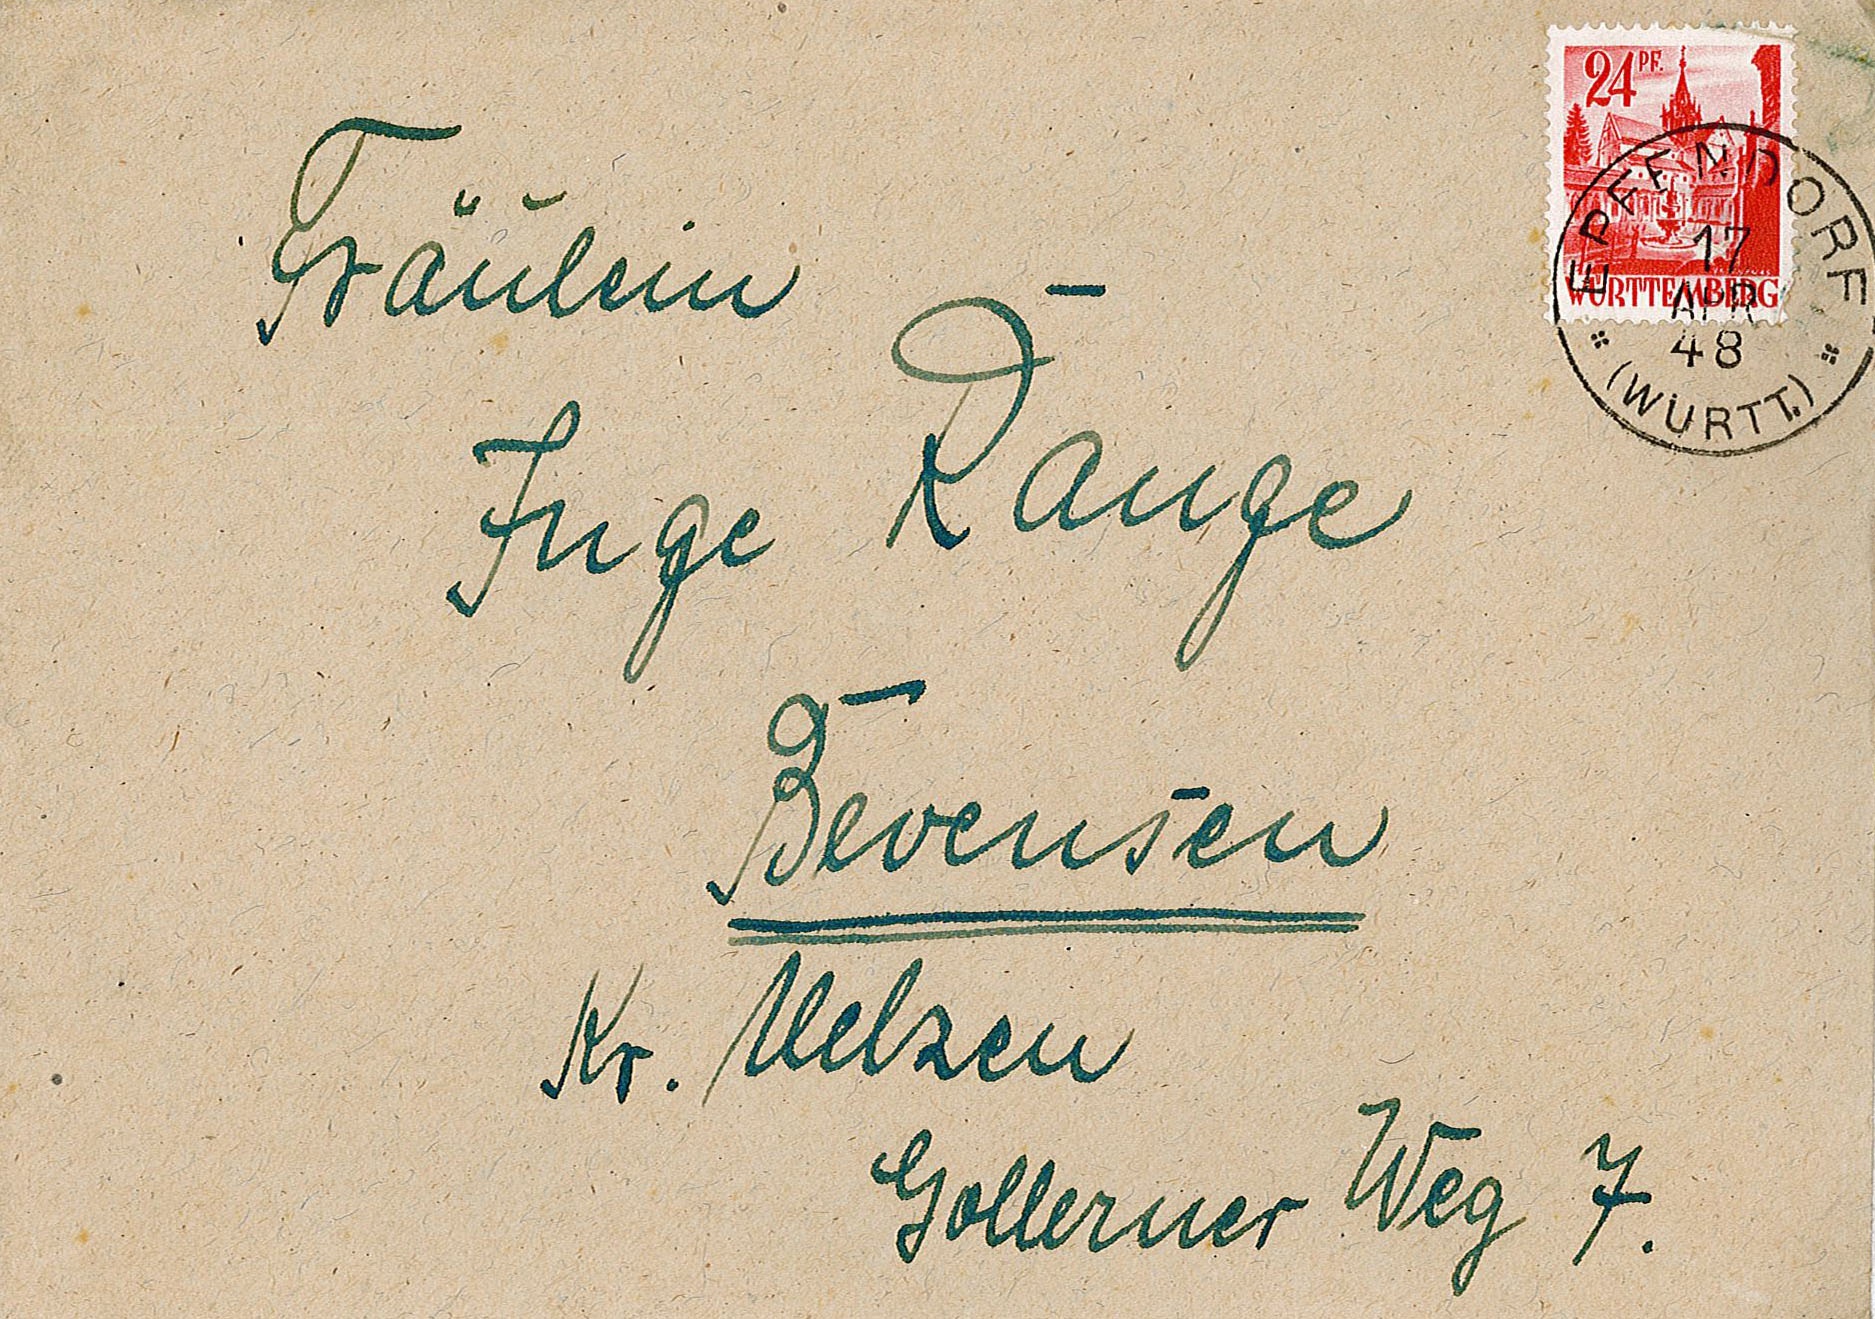 Glückwunschbrief zur Verlobung an Ingeborg Range von Familie Rickert, 15. April 1948 (Museum Wolmirstedt RR-F)